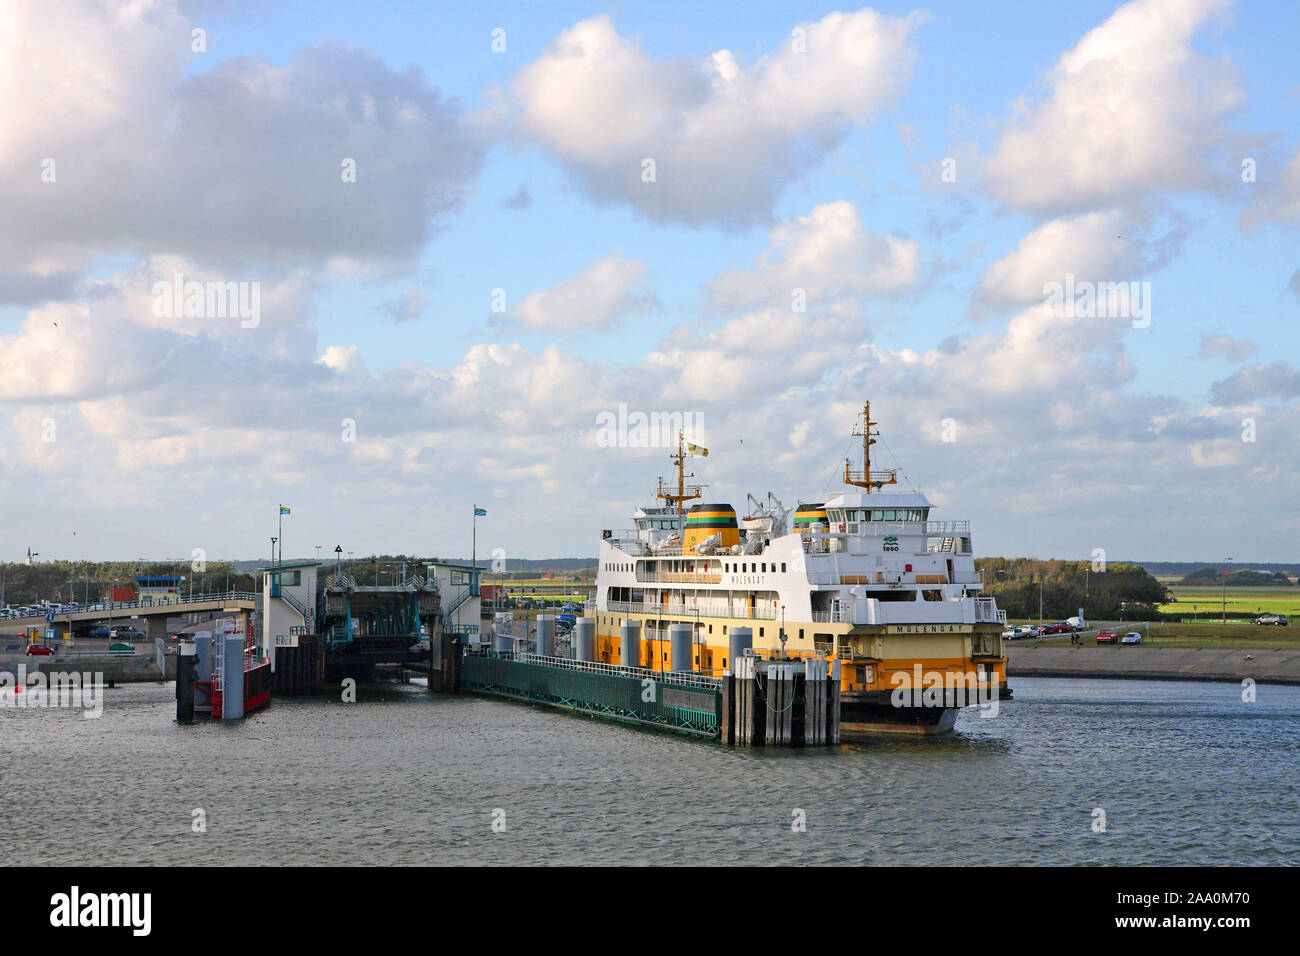 Faehrhafen der Insel Texel Stock Photo